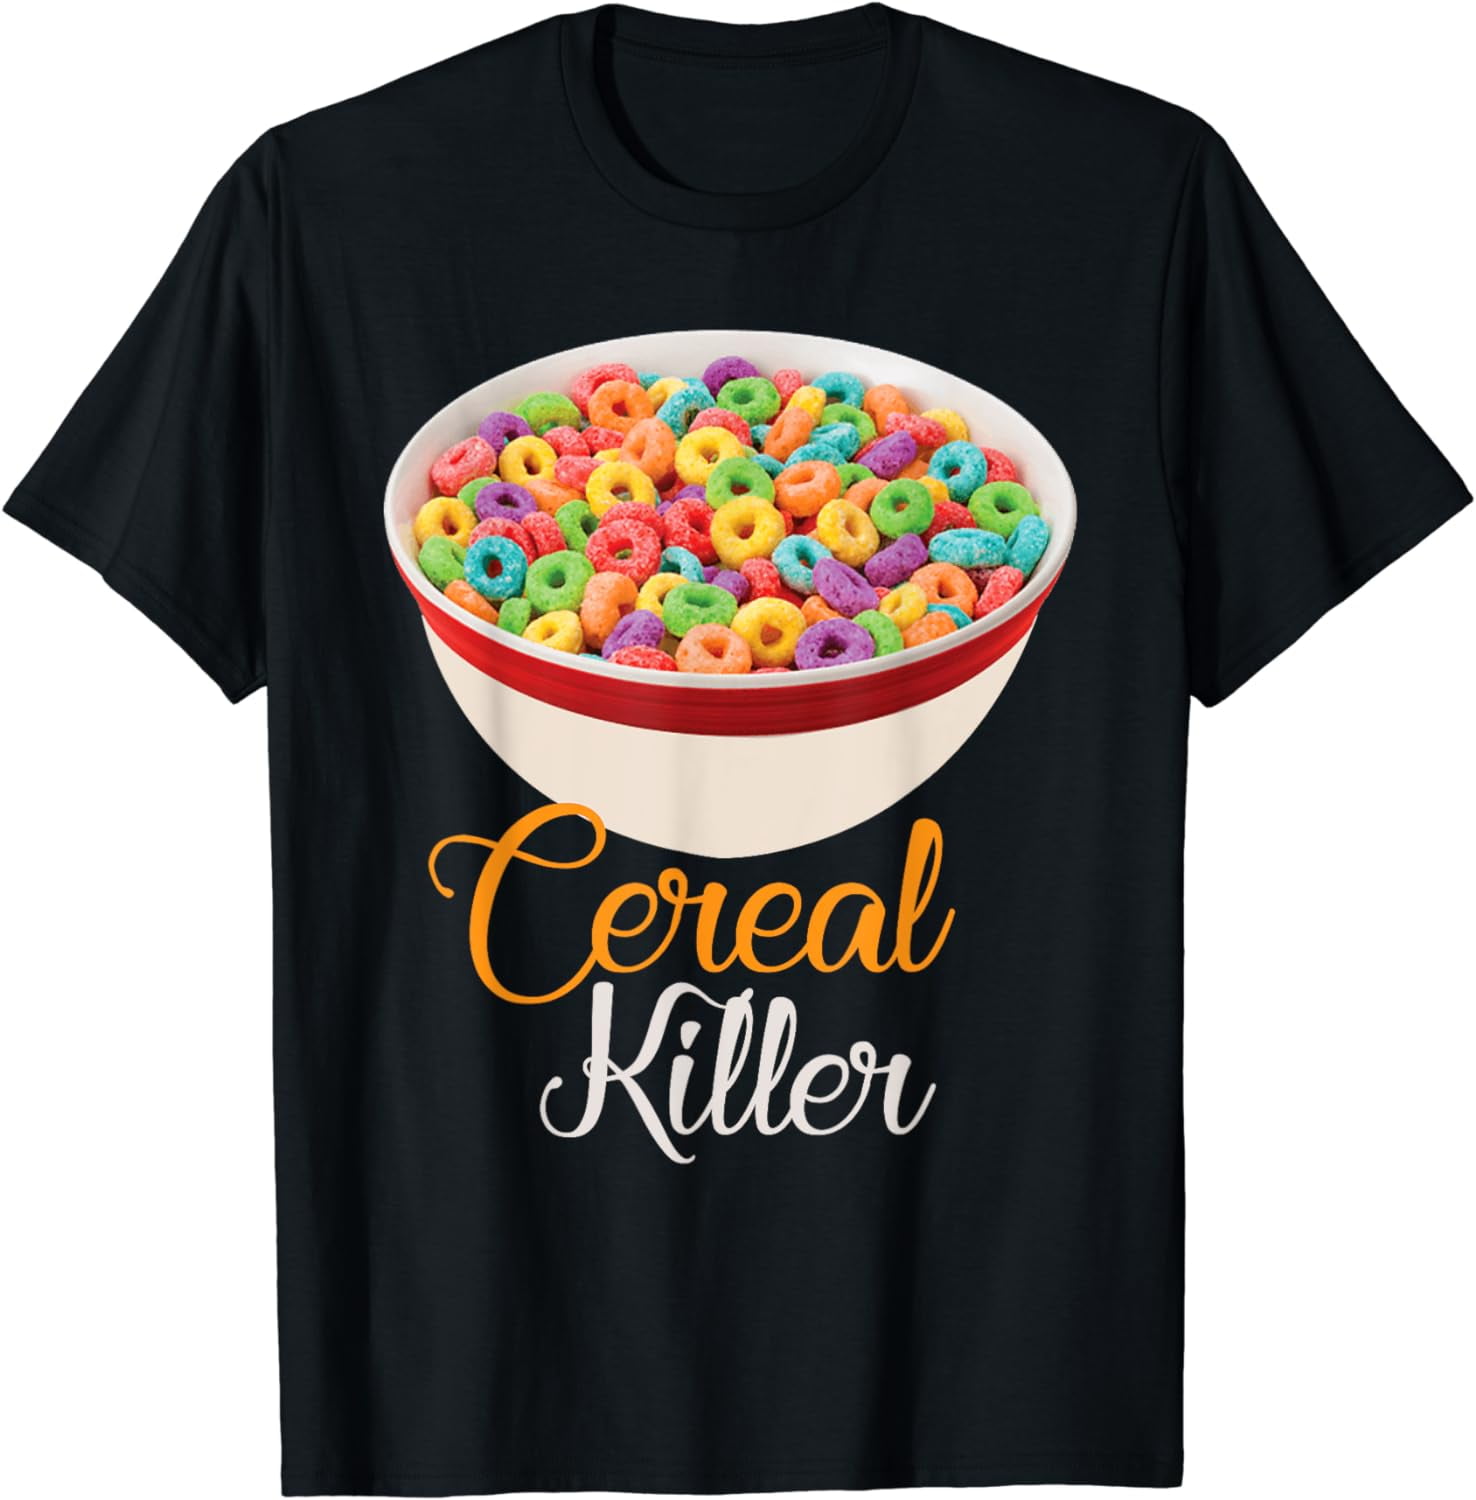 Cereal Killer - Funny Breakfast T-Shirt - Walmart.com